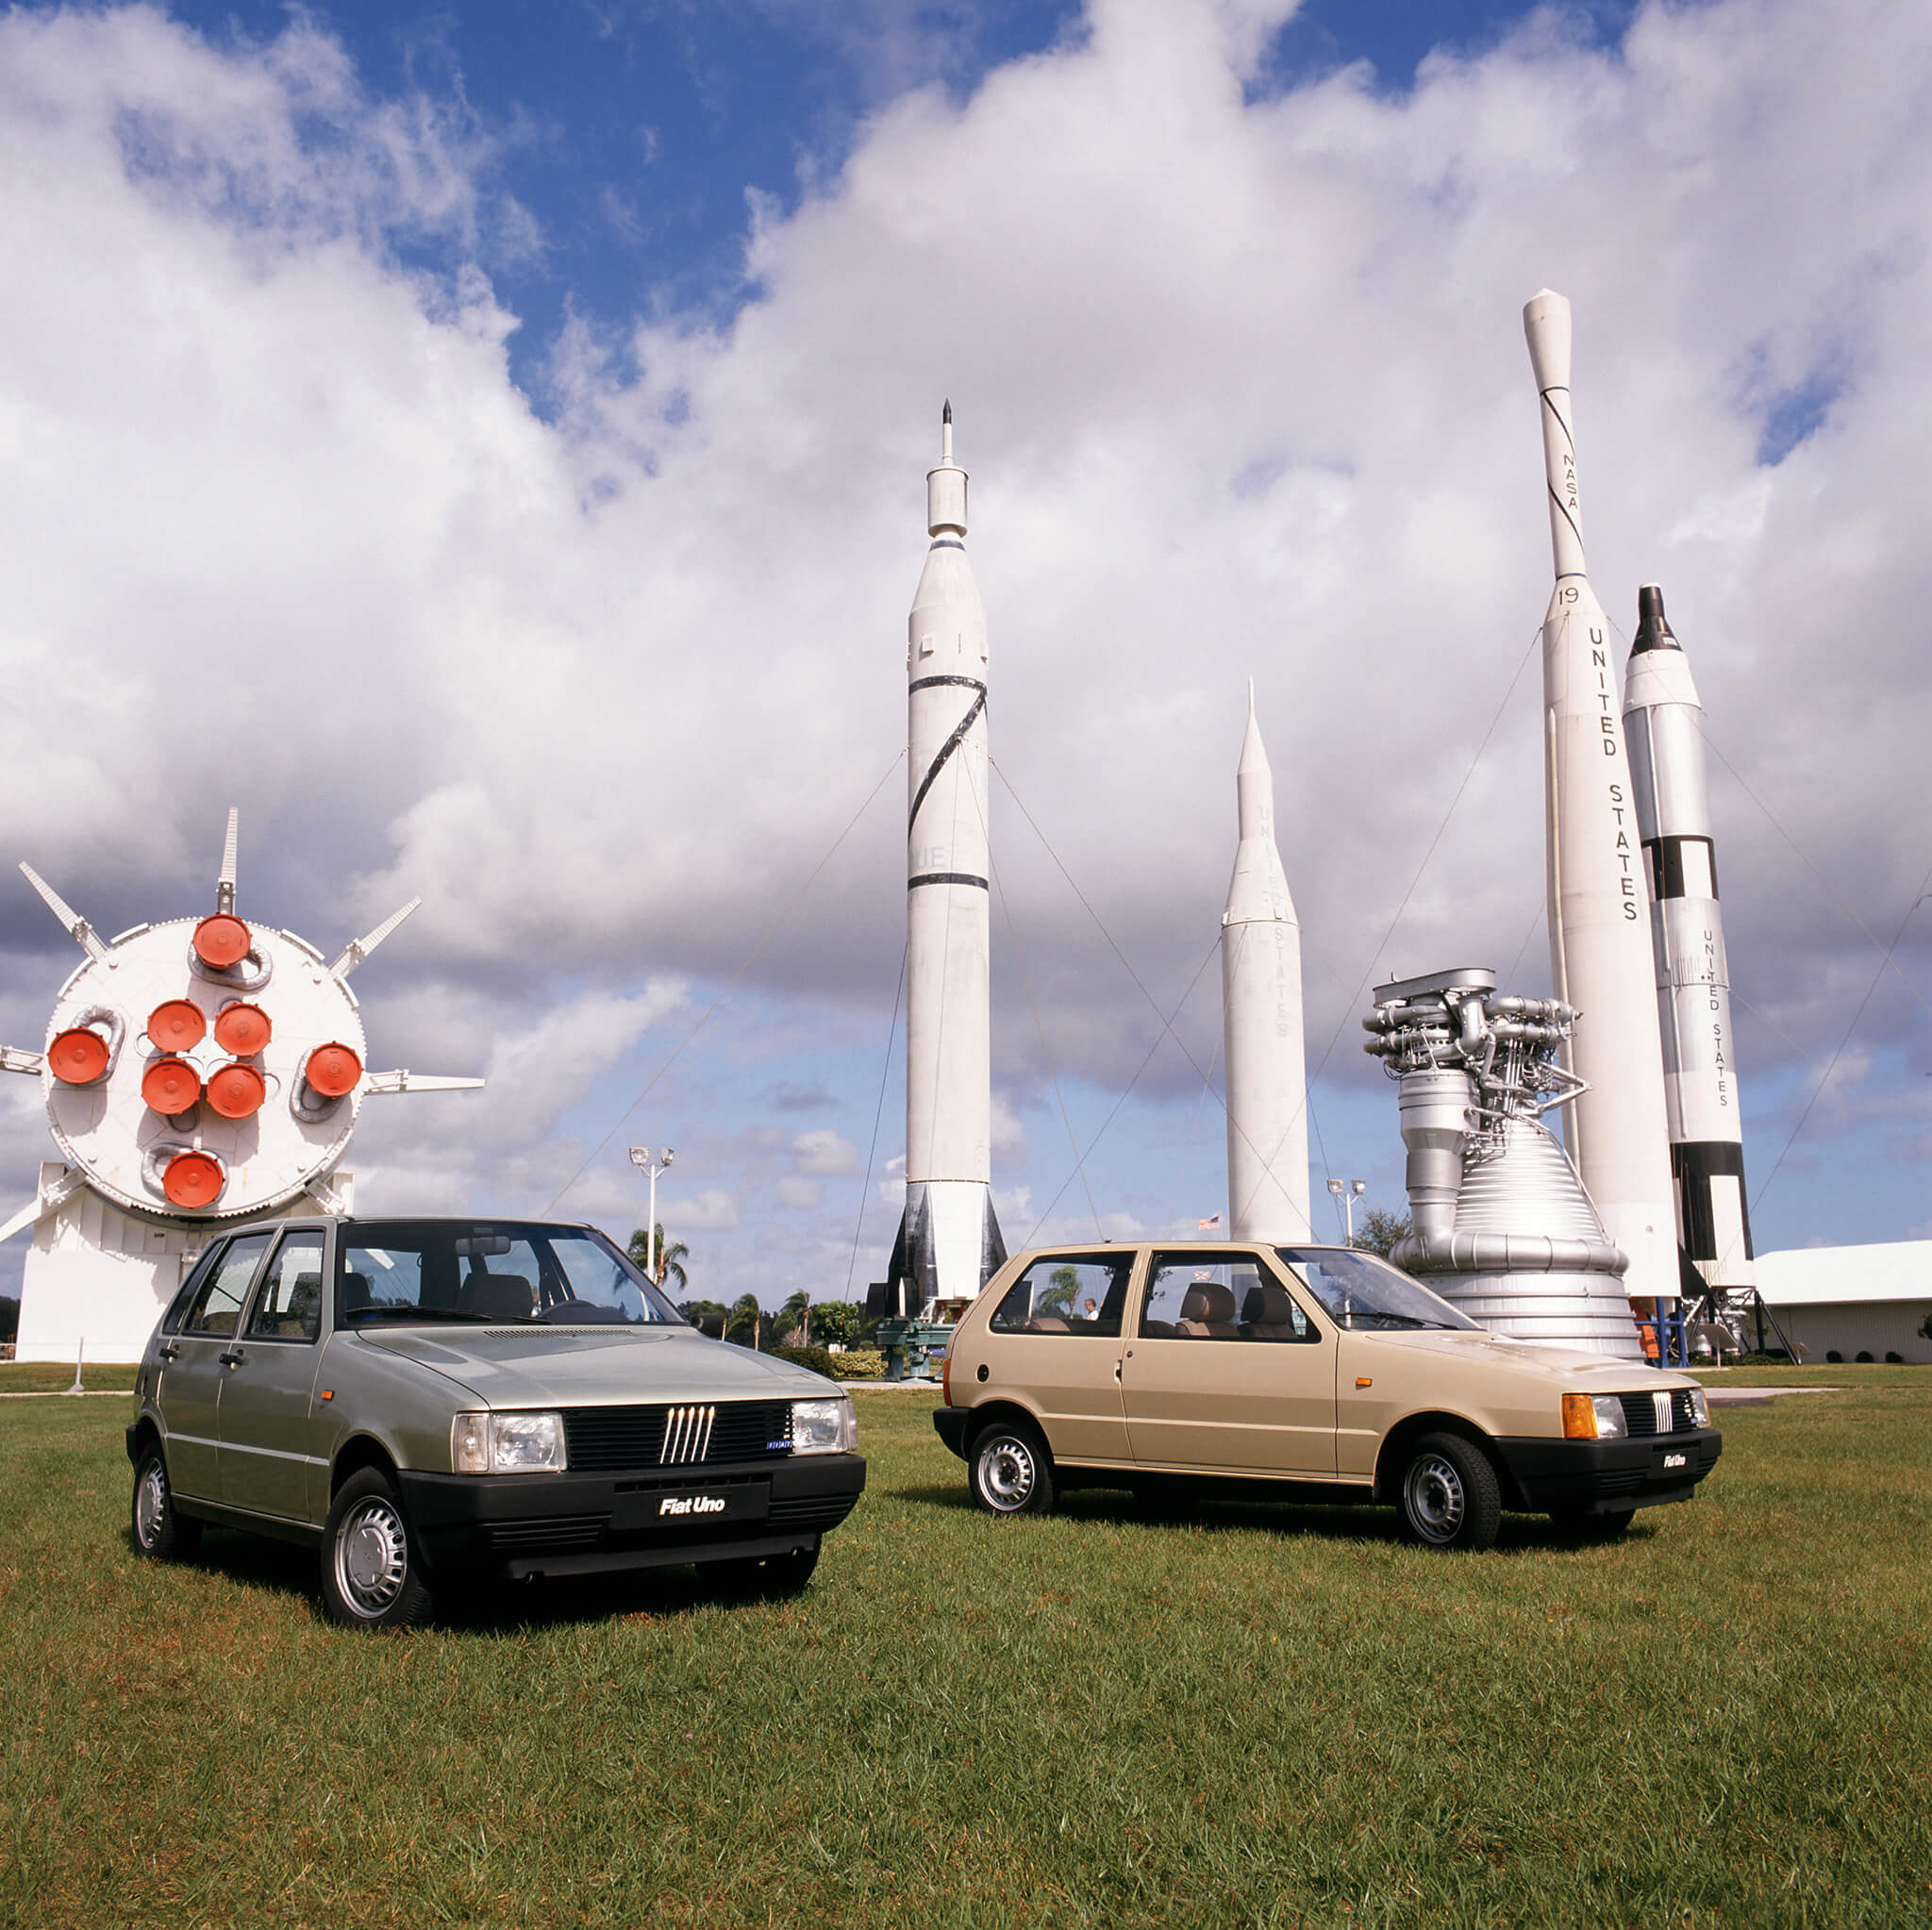 Par de Fiat Uno com foguetões ao fundo no Kennedy Space Center